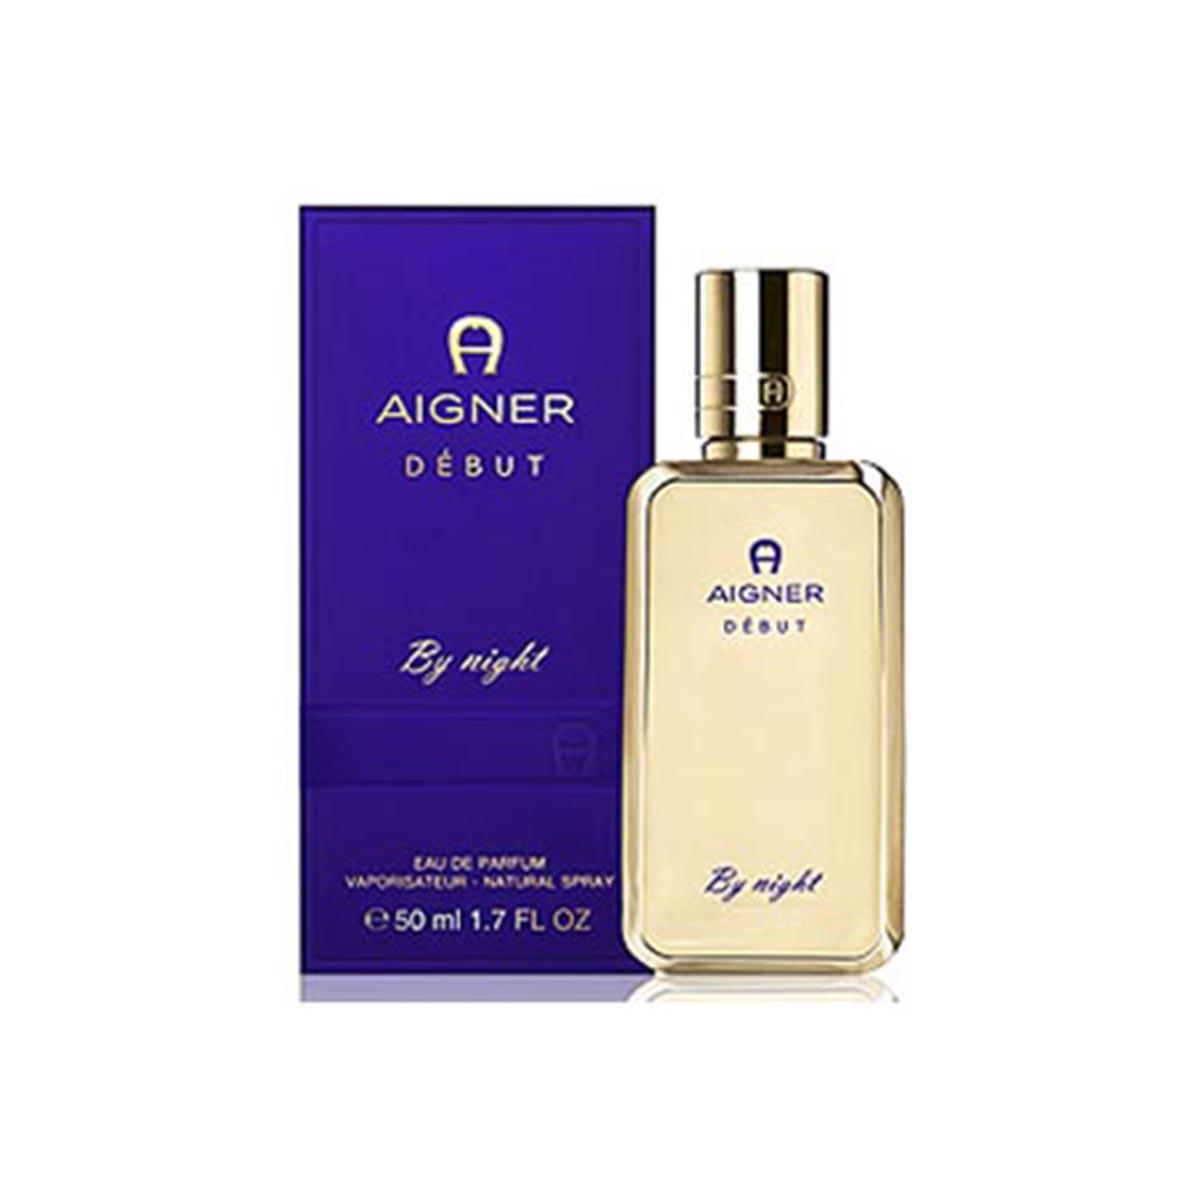 consumo-aigner-debut-by-night-30ml-eau-de-parfum-without-box